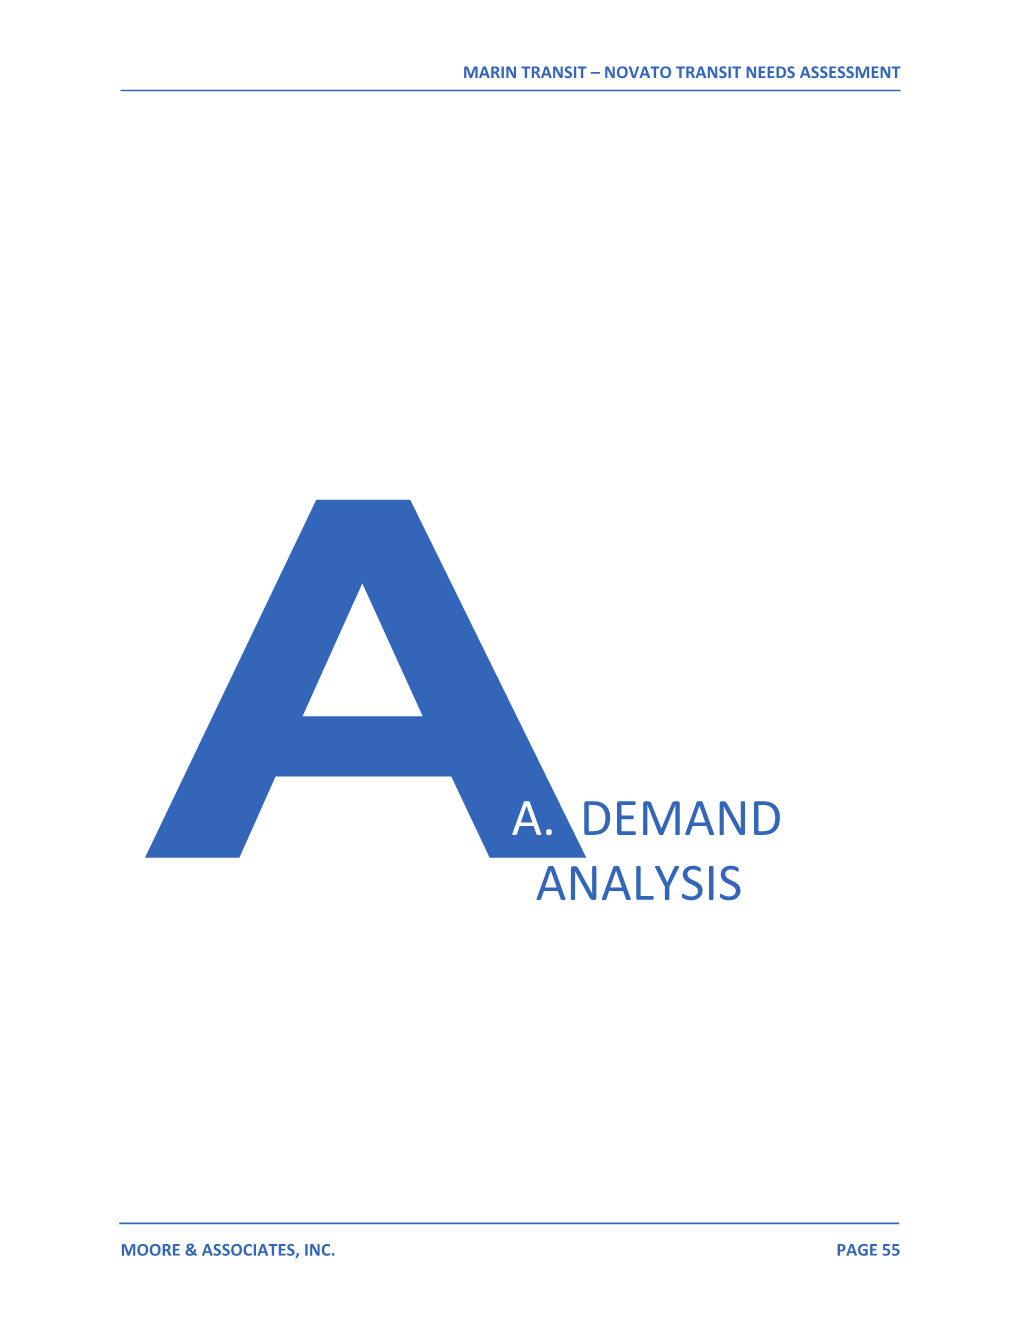 A. Demand Analysis